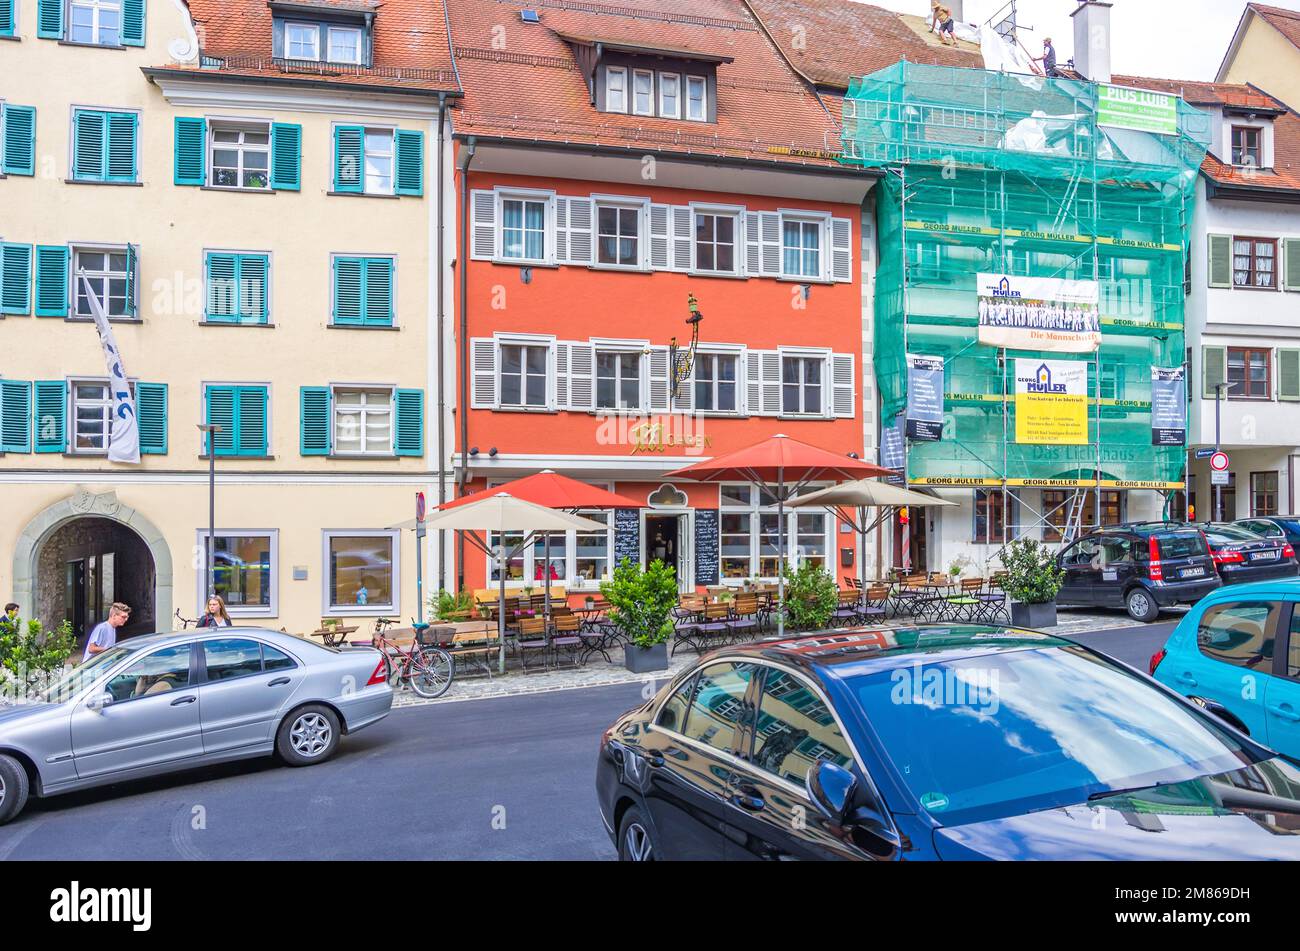 Everyday scene in front of the Mohren inn in Marktstrasse, Ravensburg, Baden-Württemberg, Germany. Stock Photo